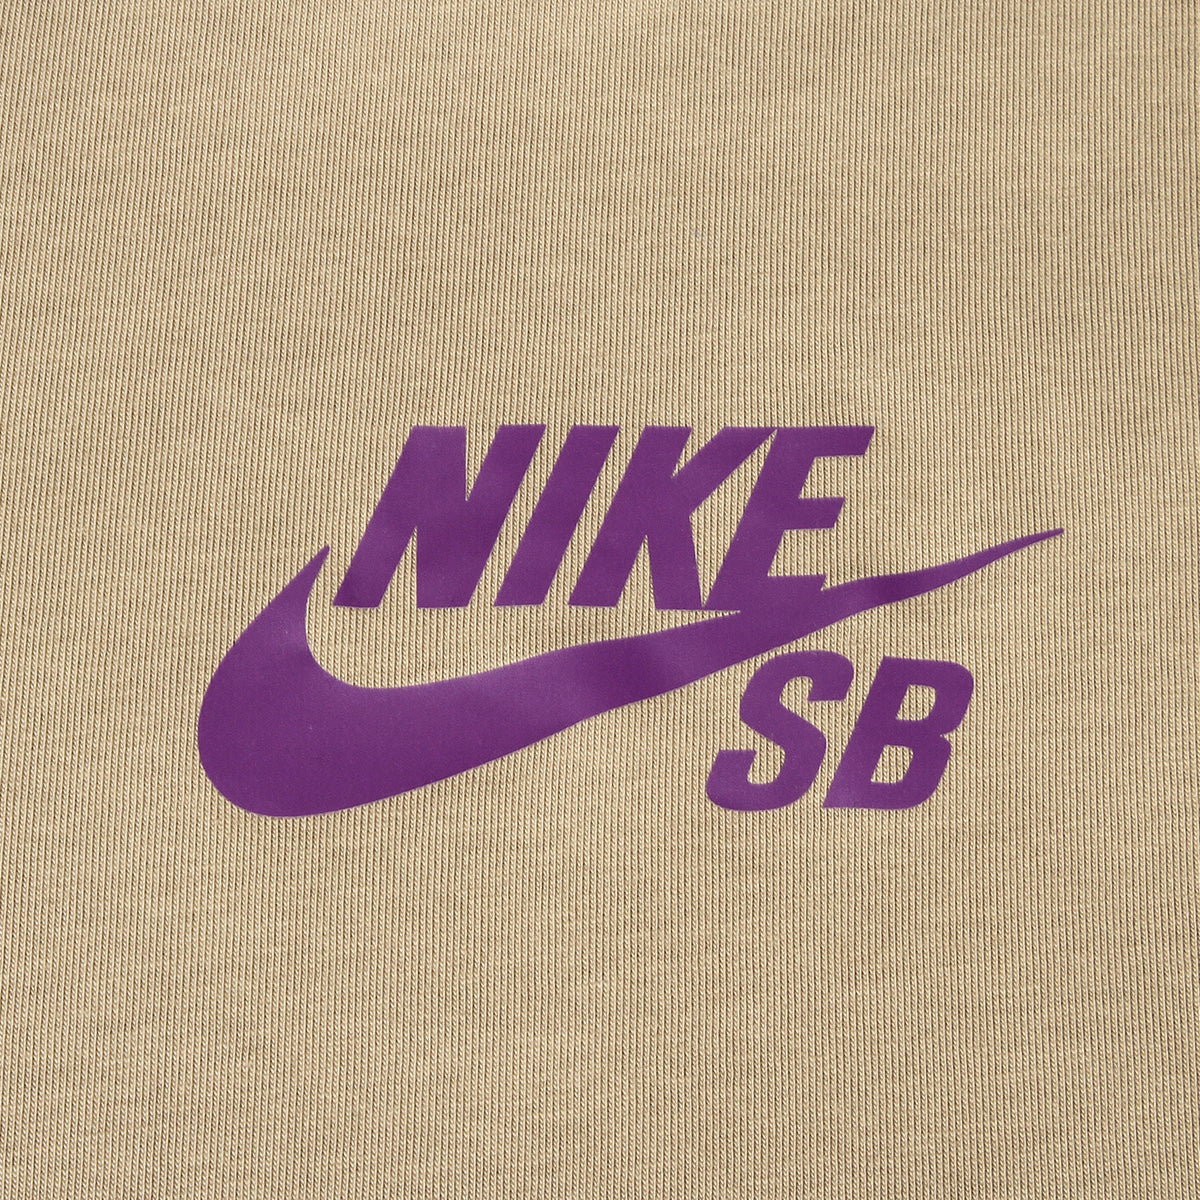 Nike SB Logo T-Shirt Khaki